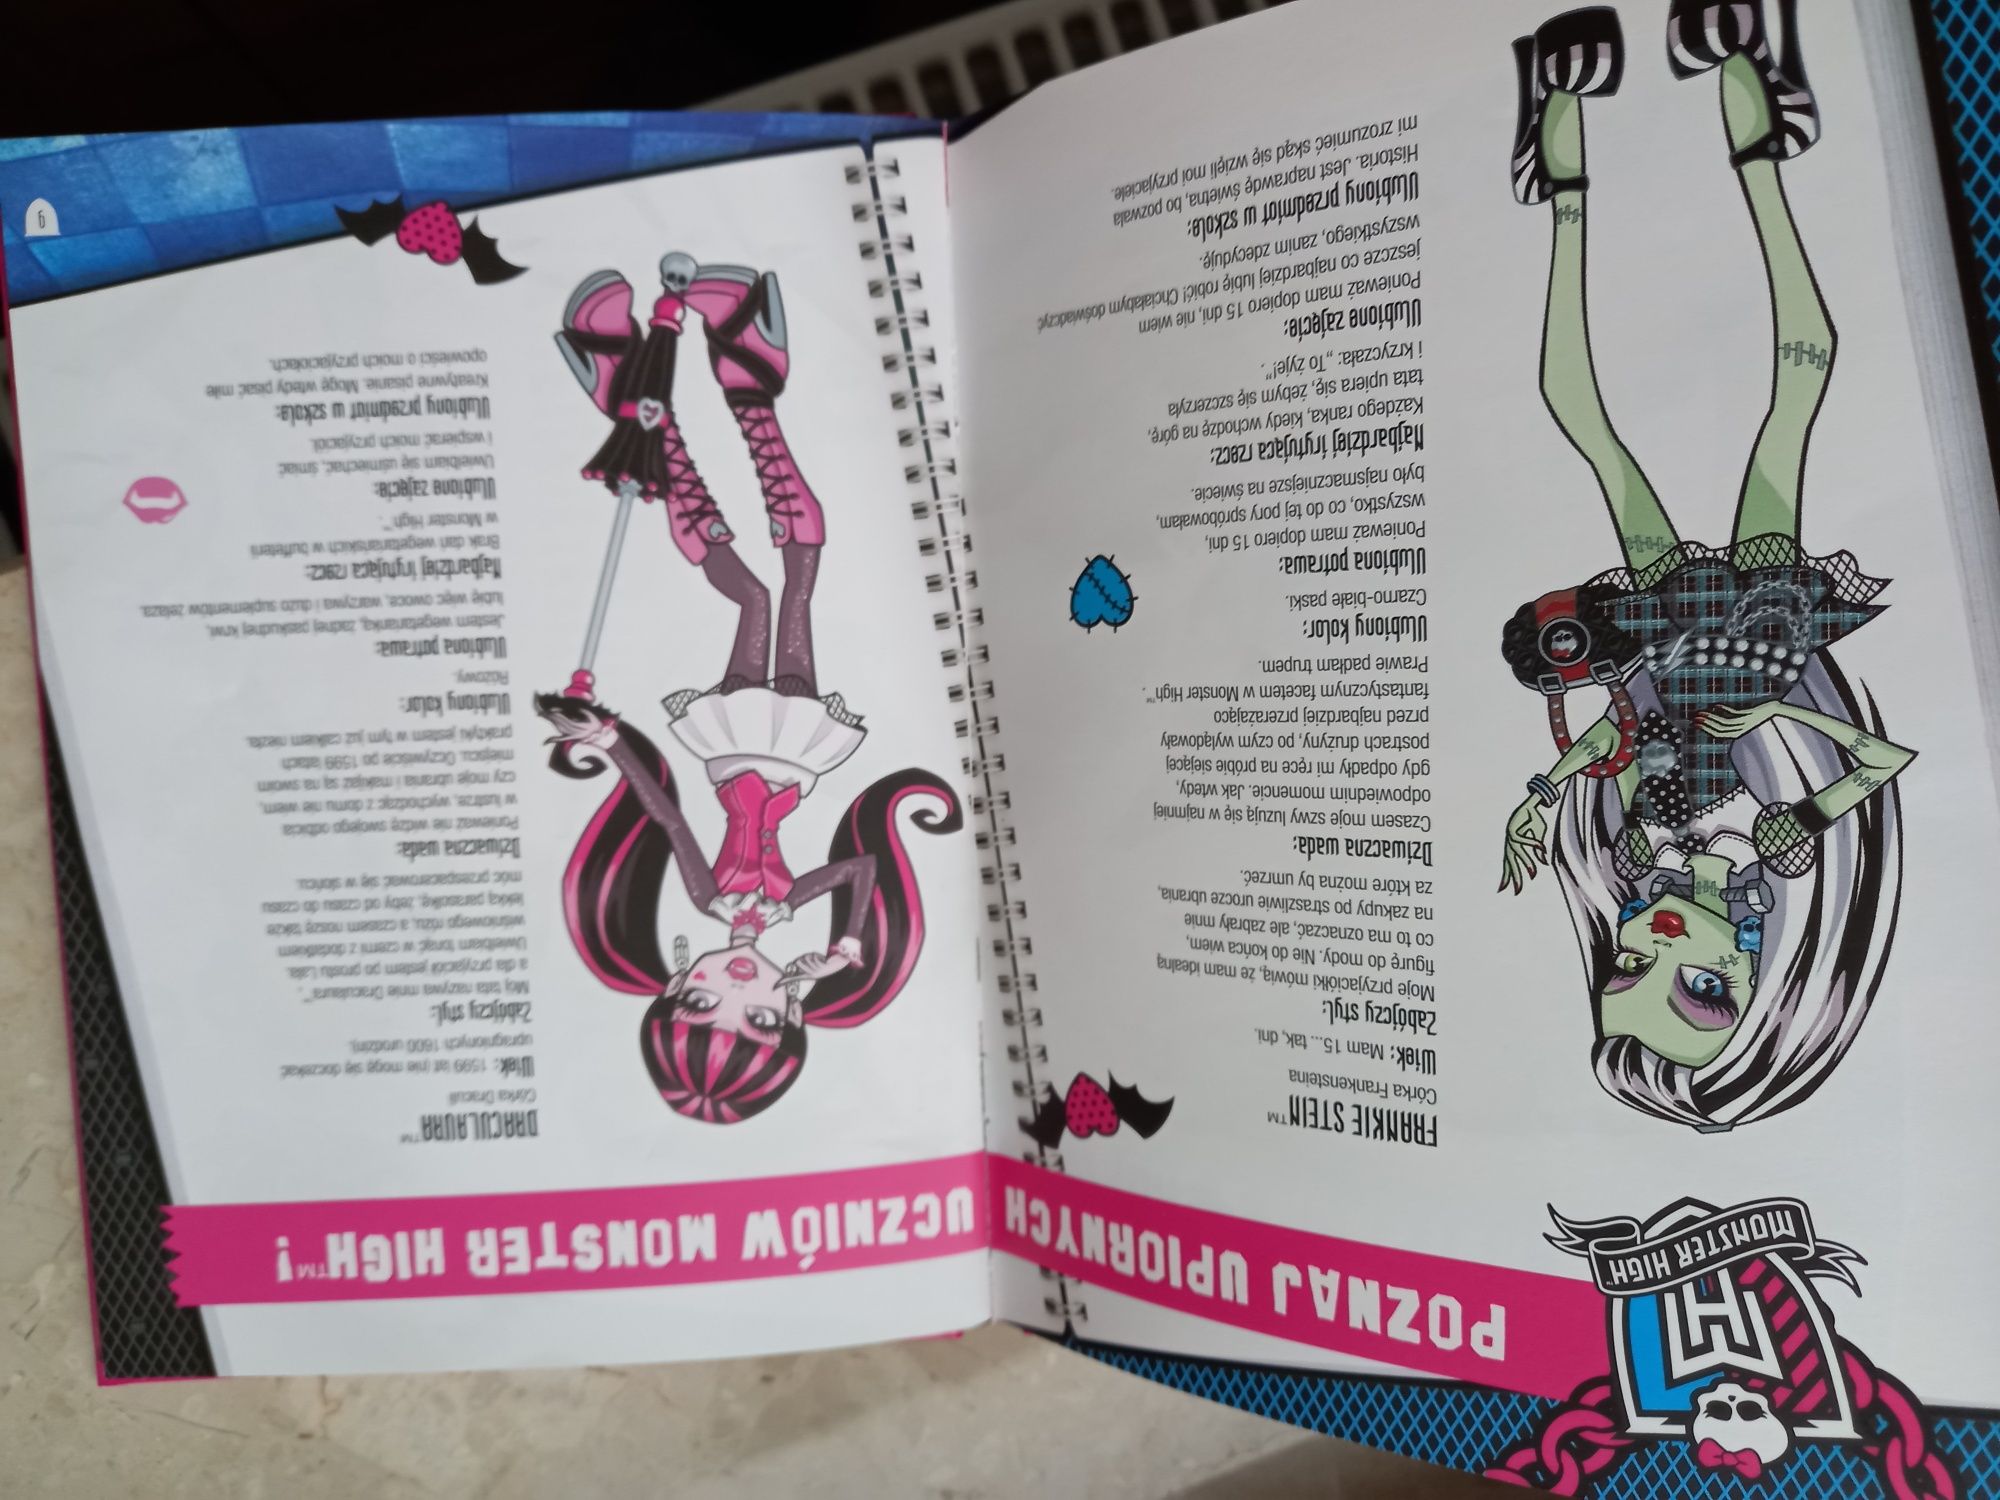 Monster High "Upiorki rządzą" Płyta DVD z książką